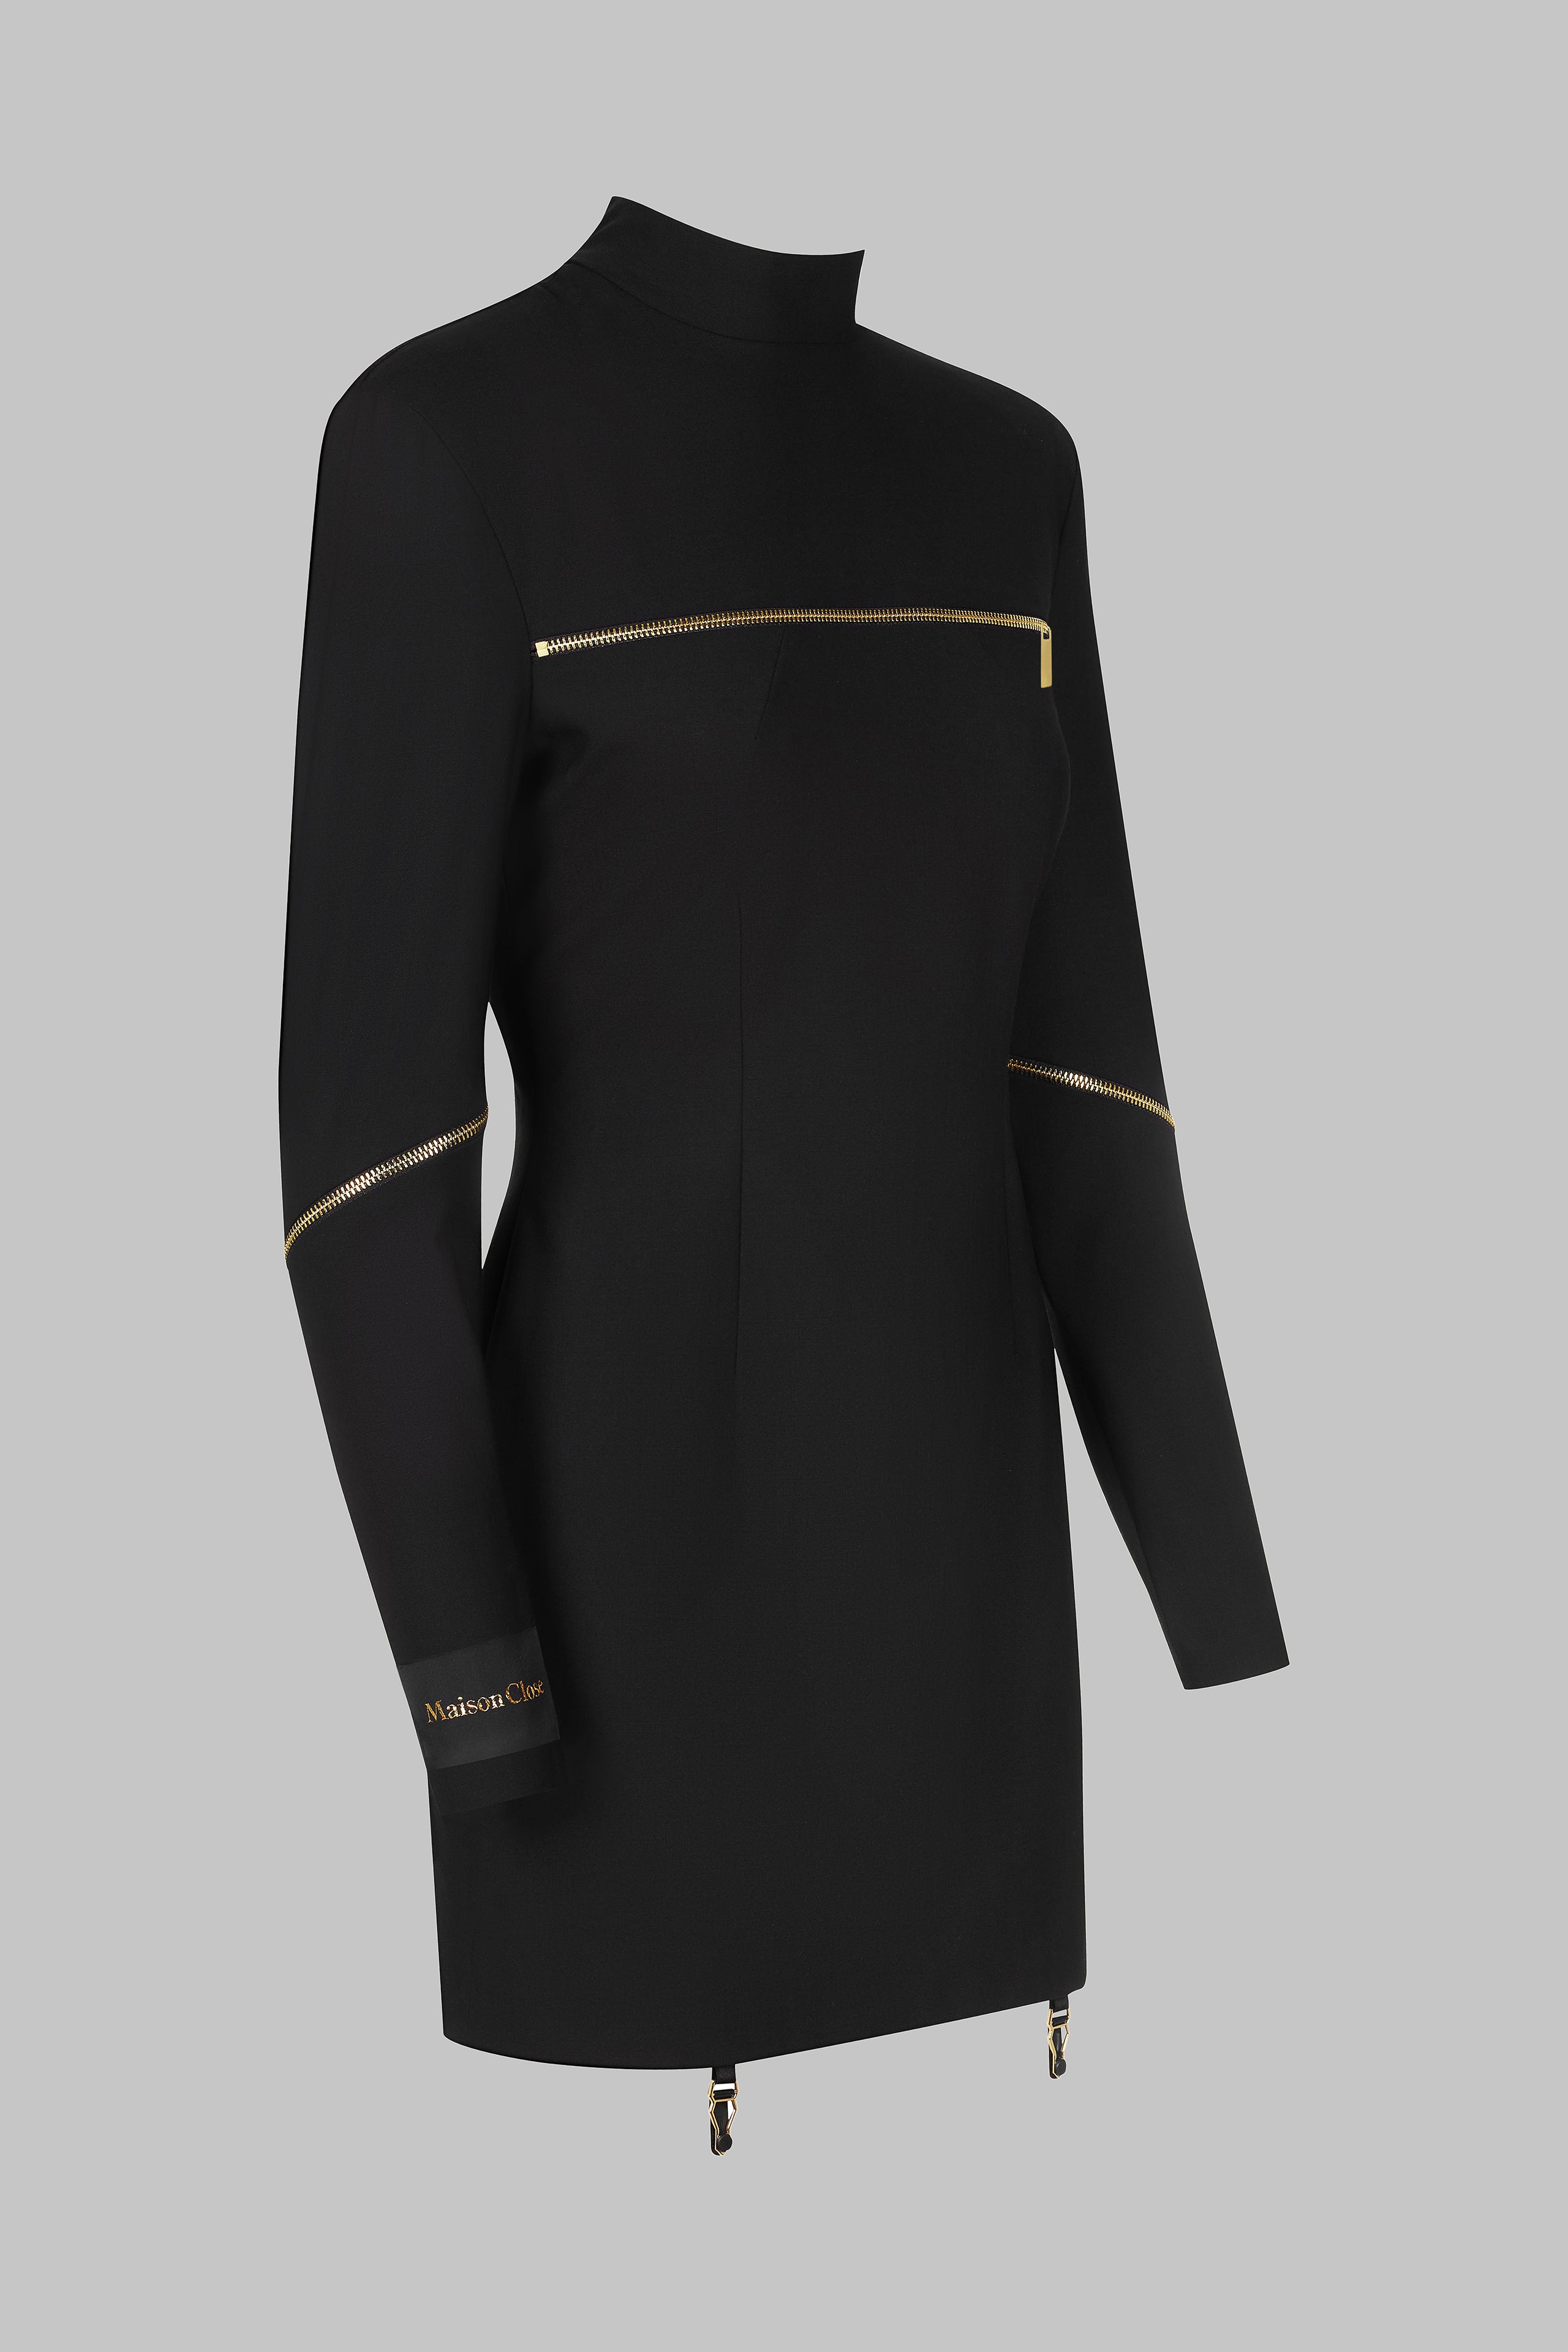 018 - Robe courte manches longues à zip en laine